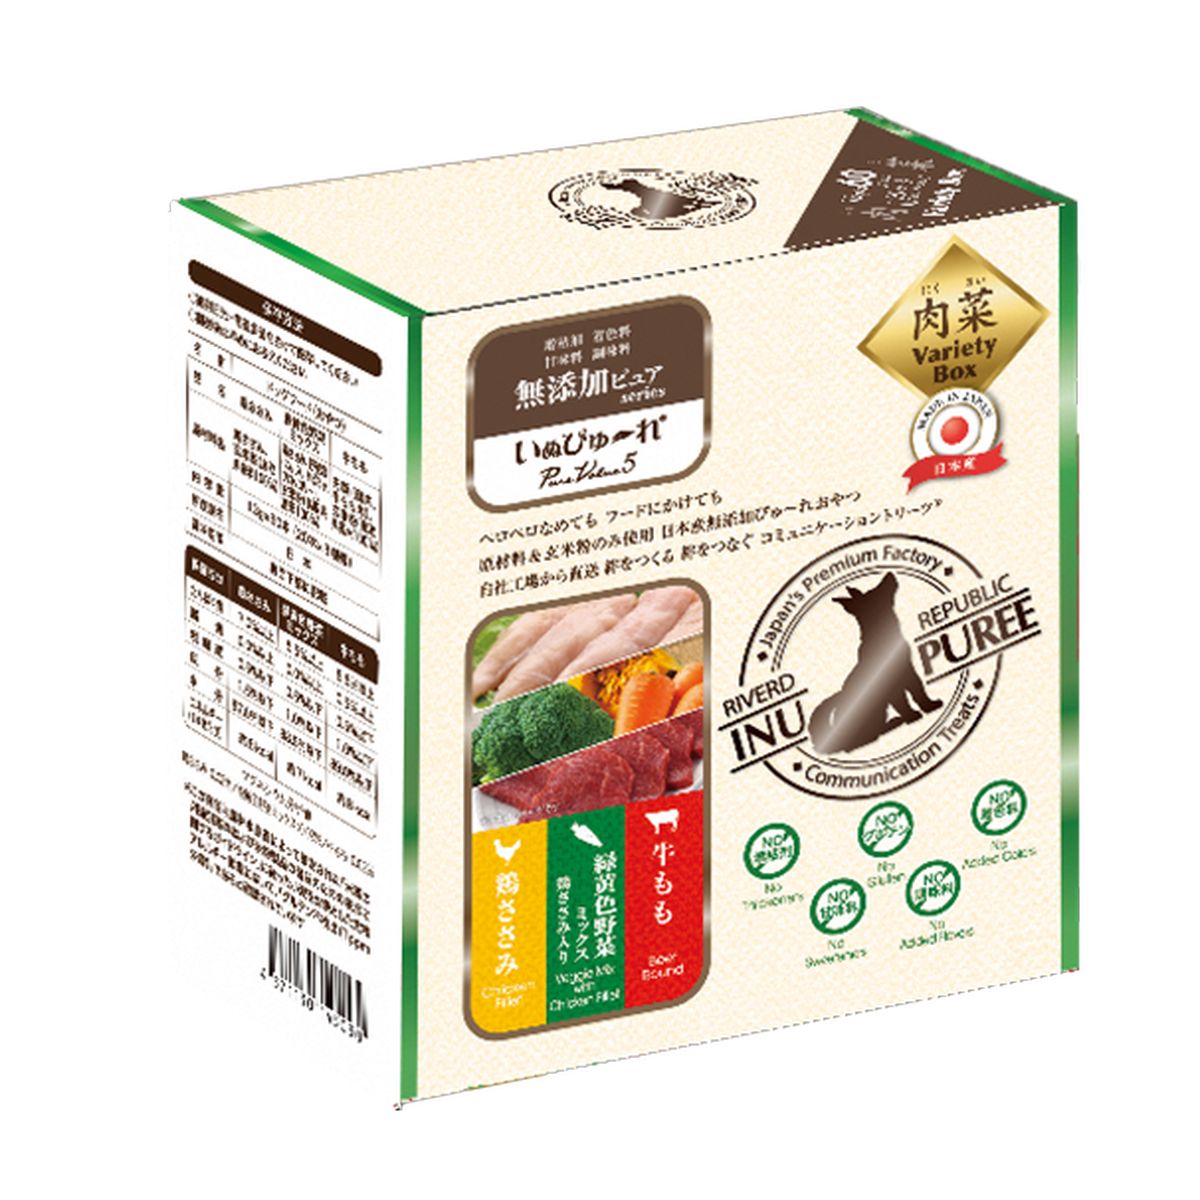 イヌピューレ無添加ピュアPureValue5バラエティボックス肉菜(鶏ササミ/野菜ミックス/牛モモ) 13g×60本×10